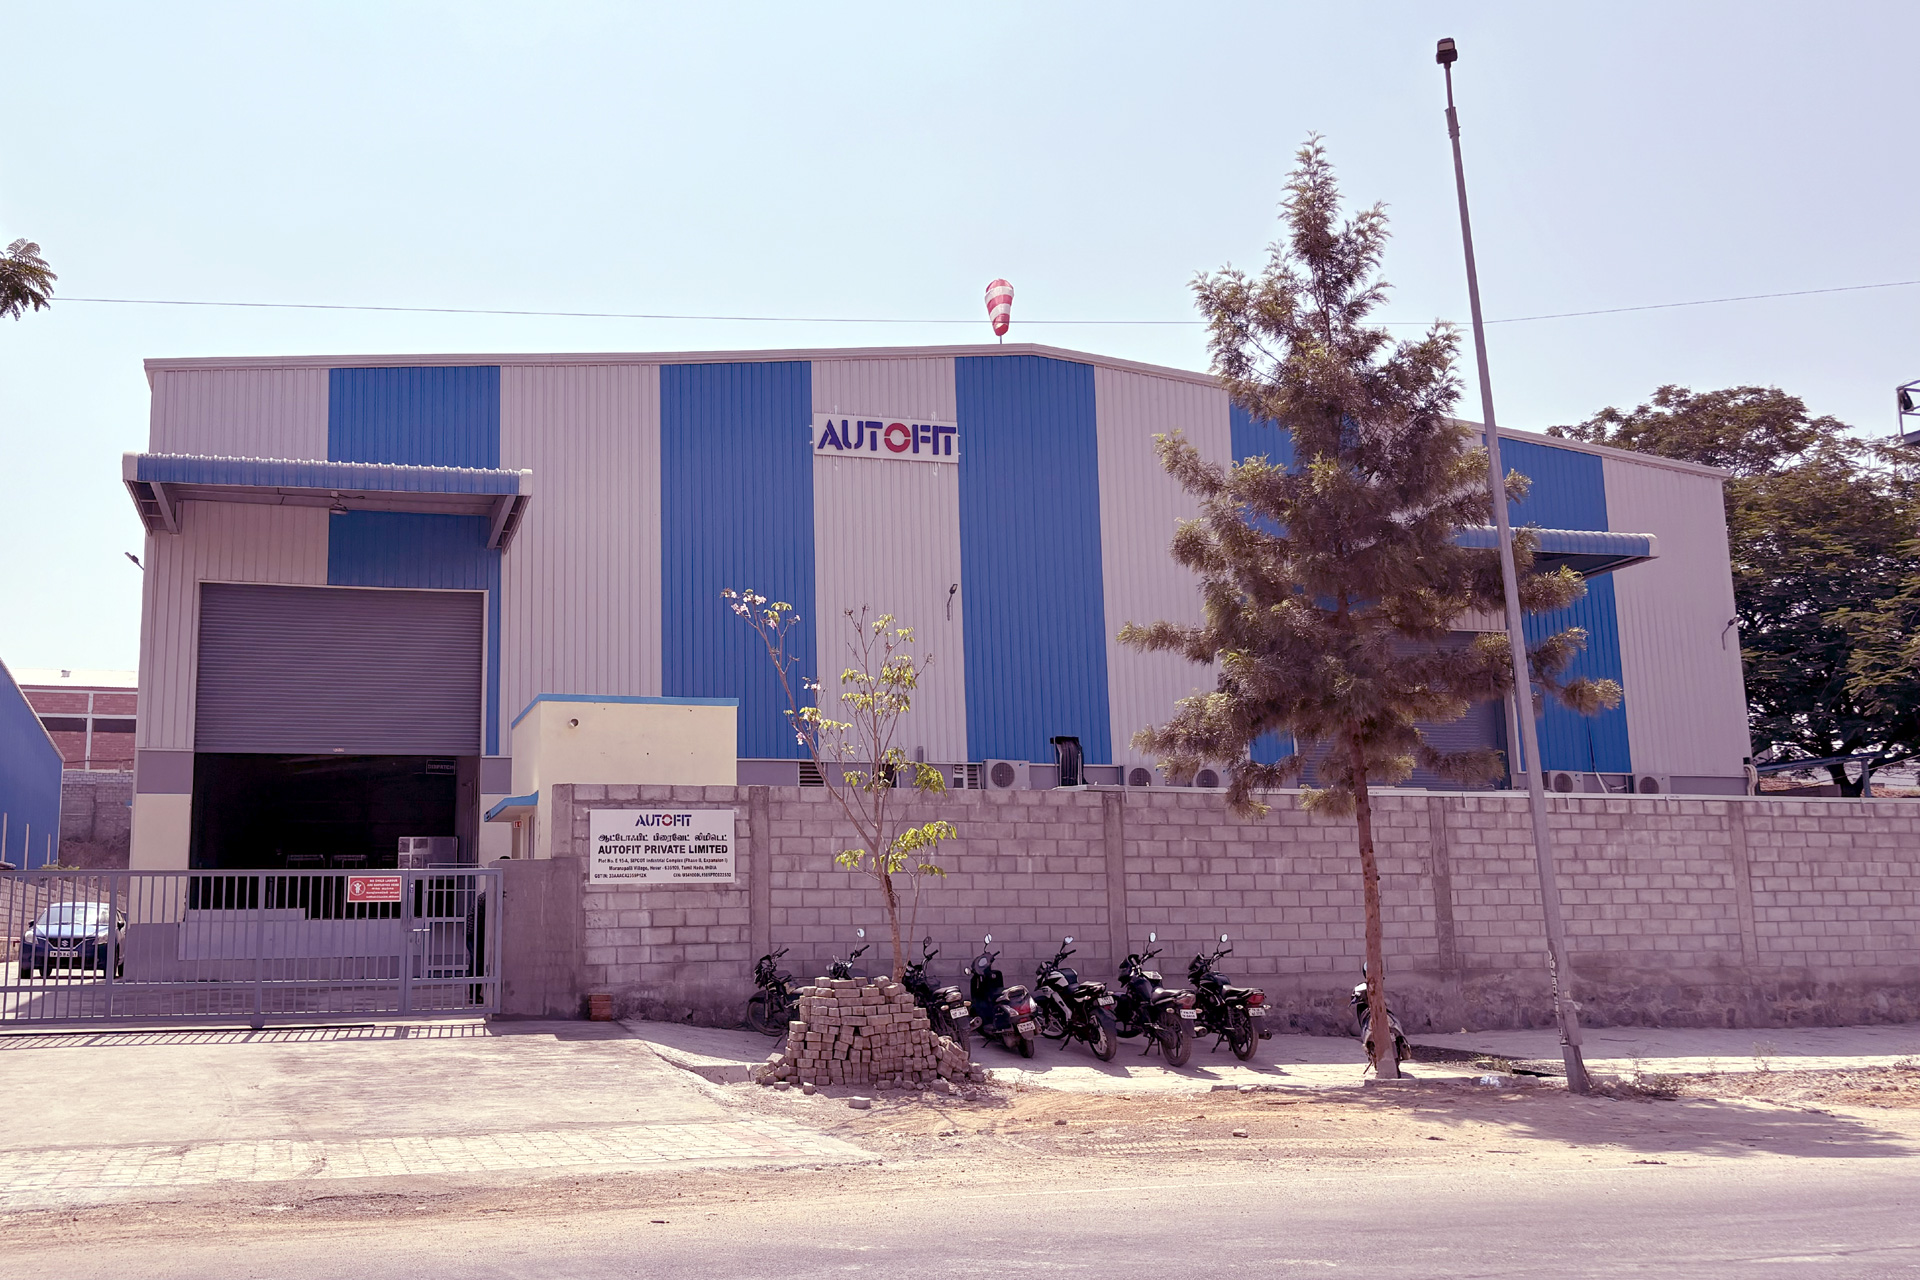 Facility-5 Hosur, Tamil Nadu